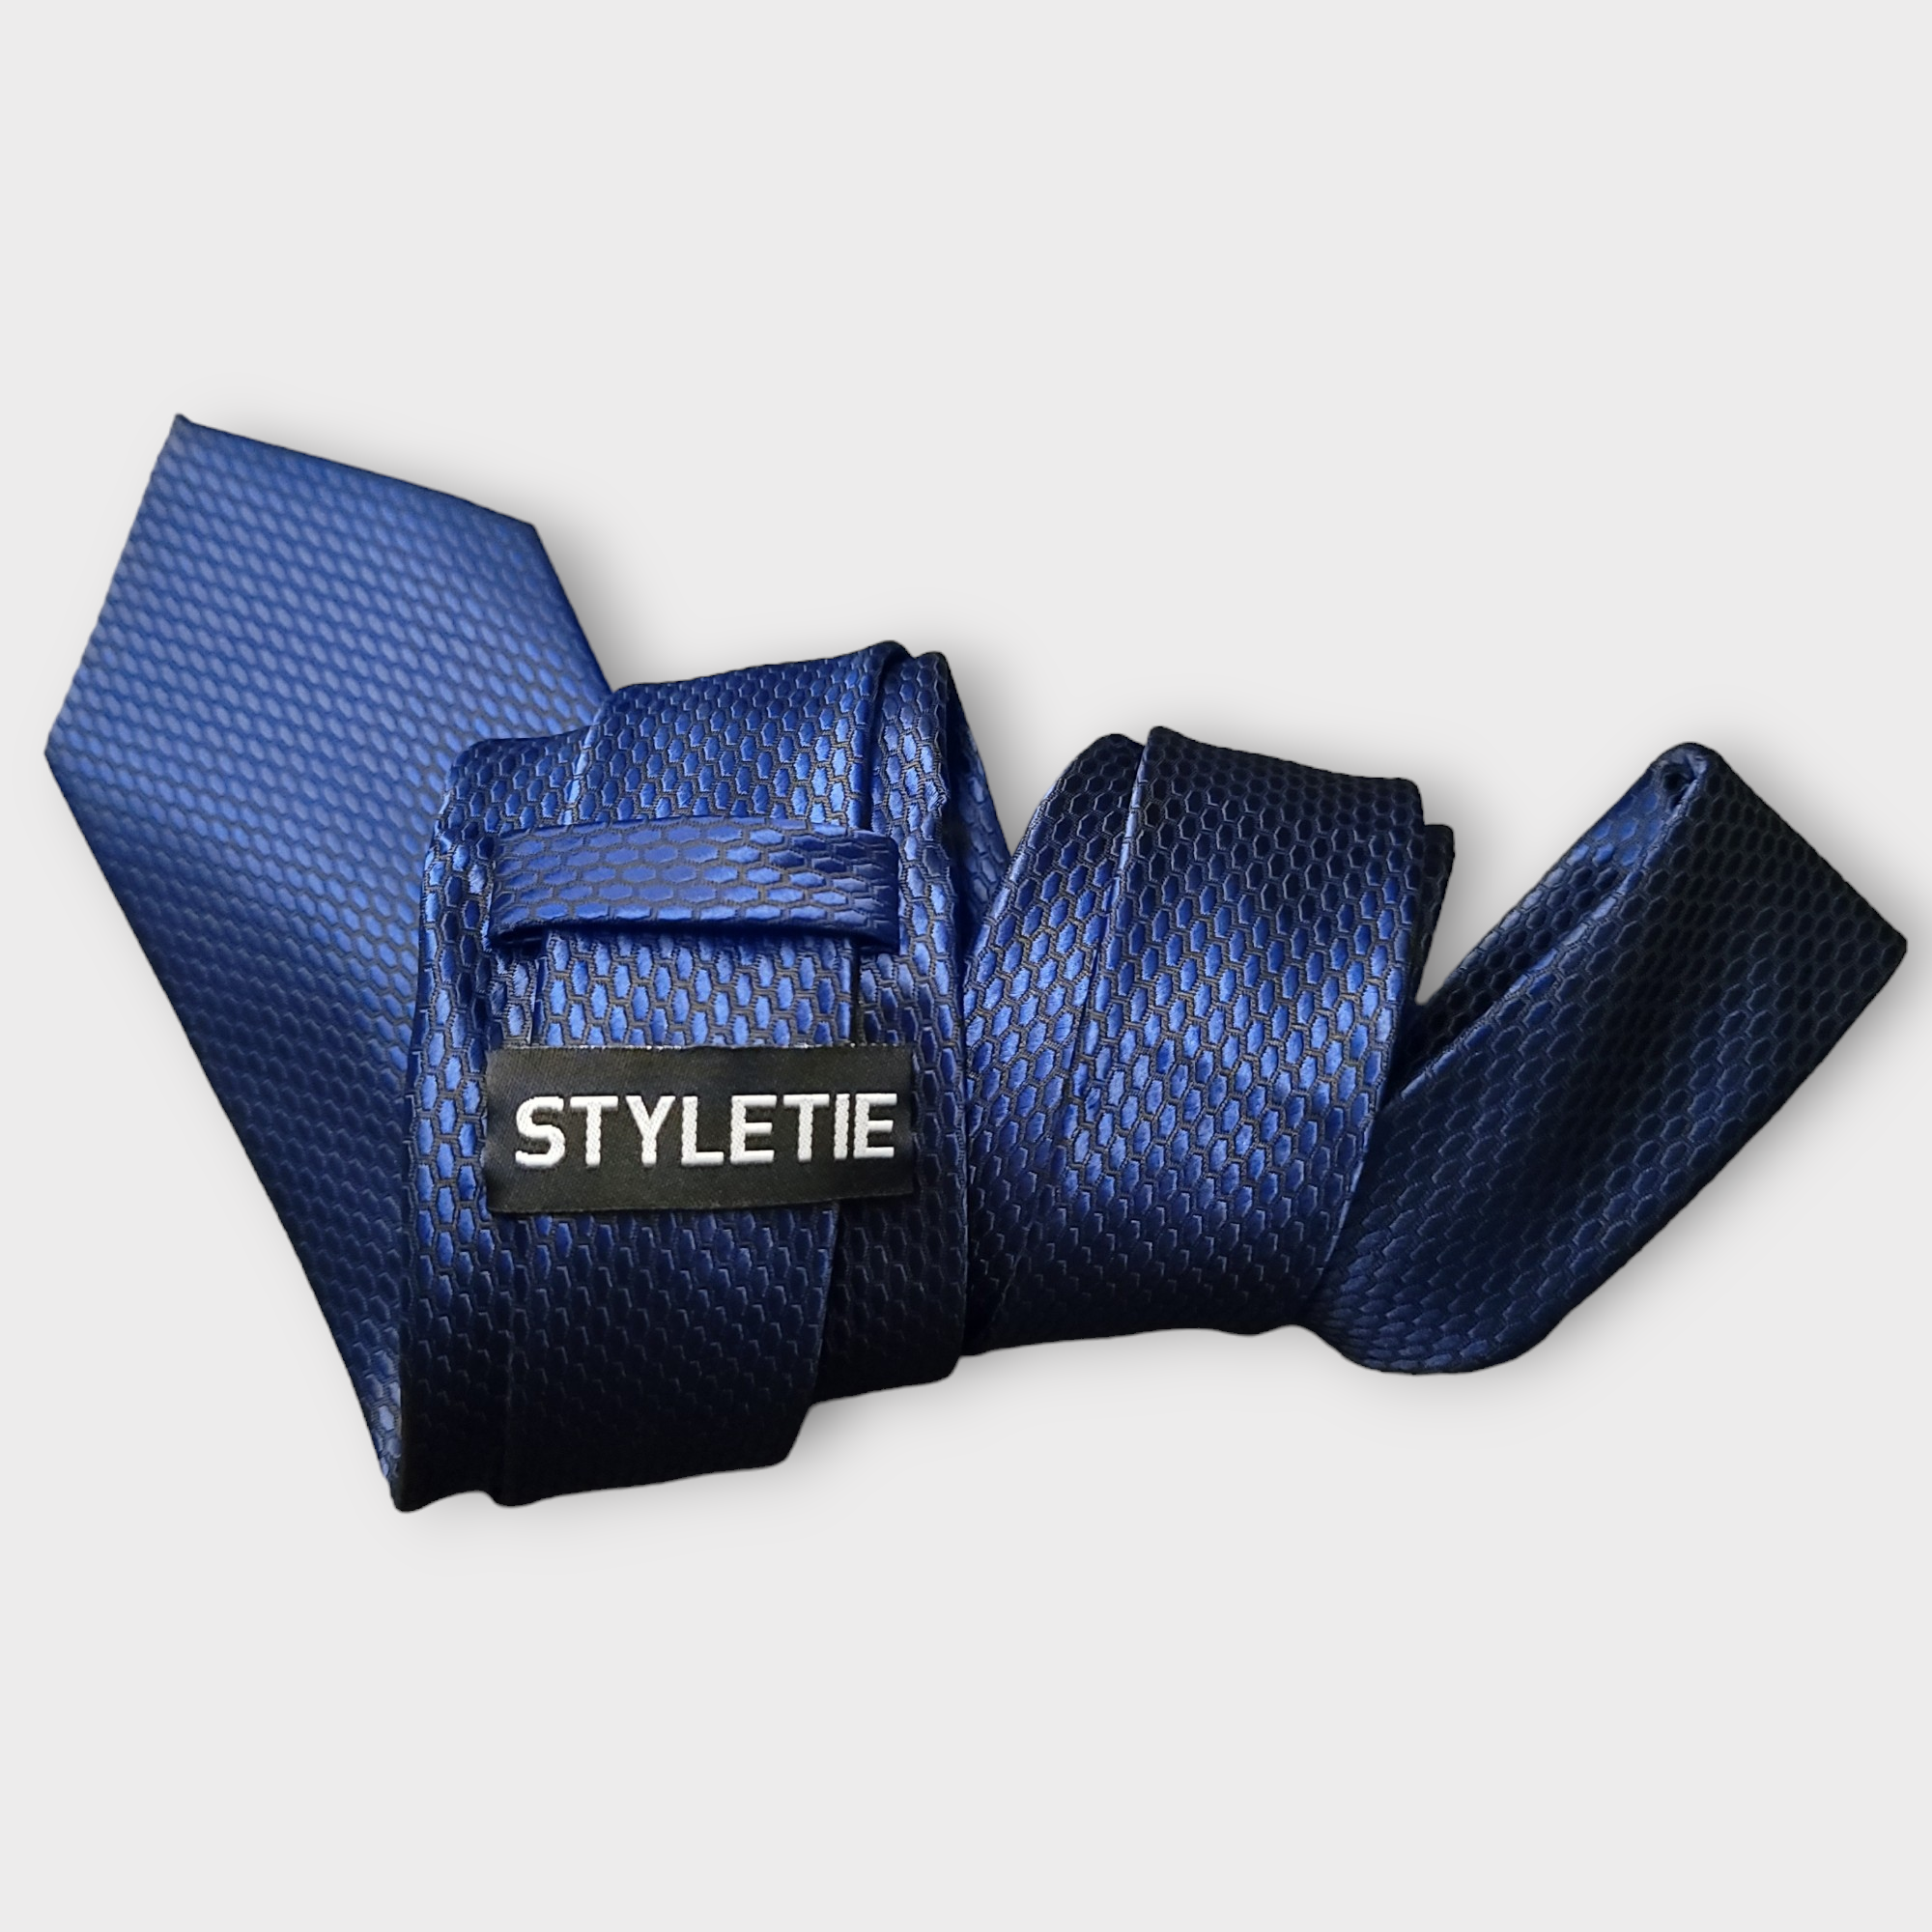 Navy Blue  Silk Tie Pocket Square Cufflink Set